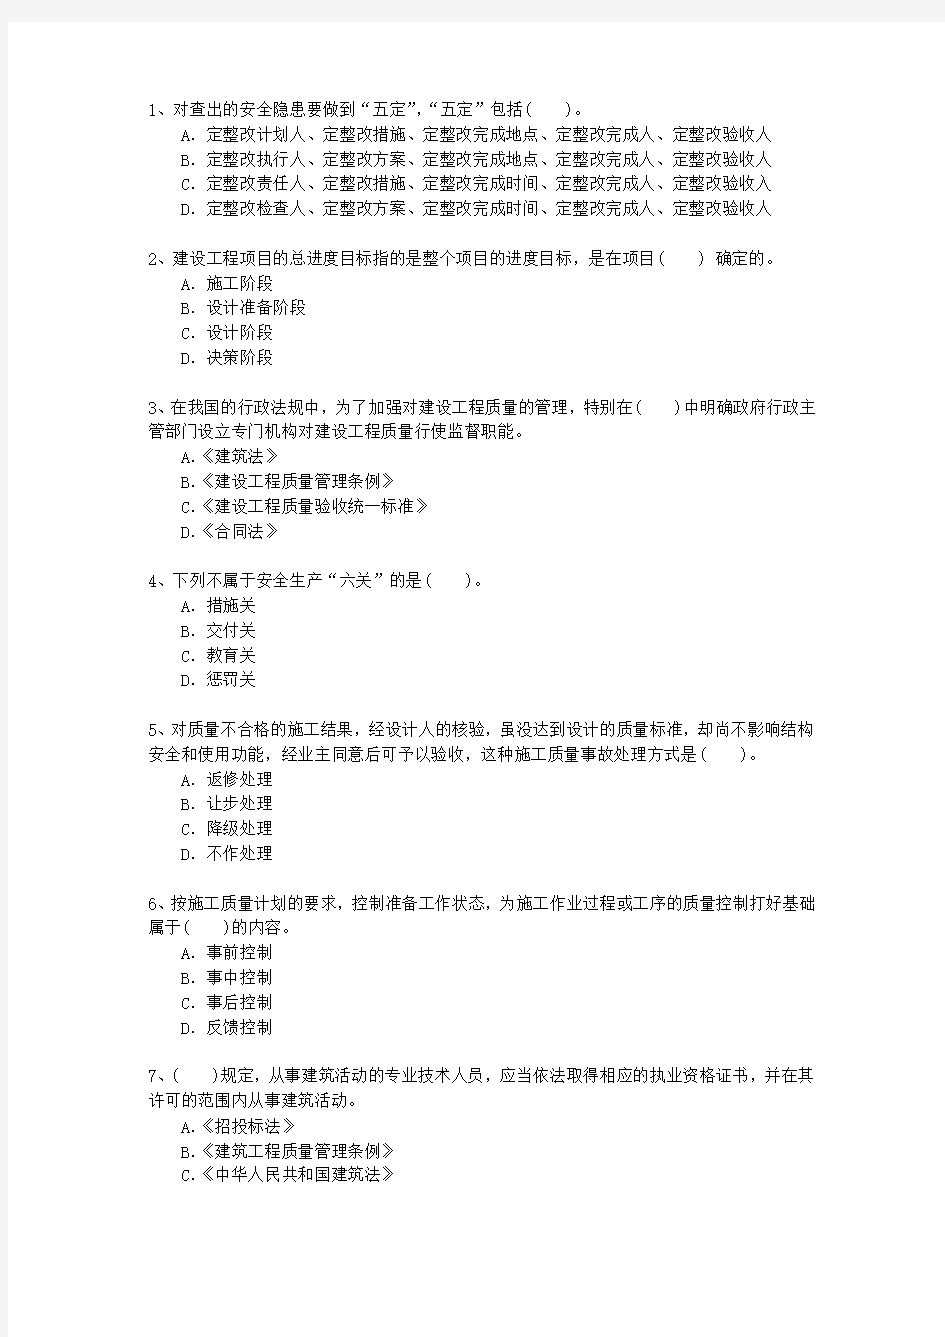 2014三级台湾省建造师法规重点资料考试技巧、答题原则